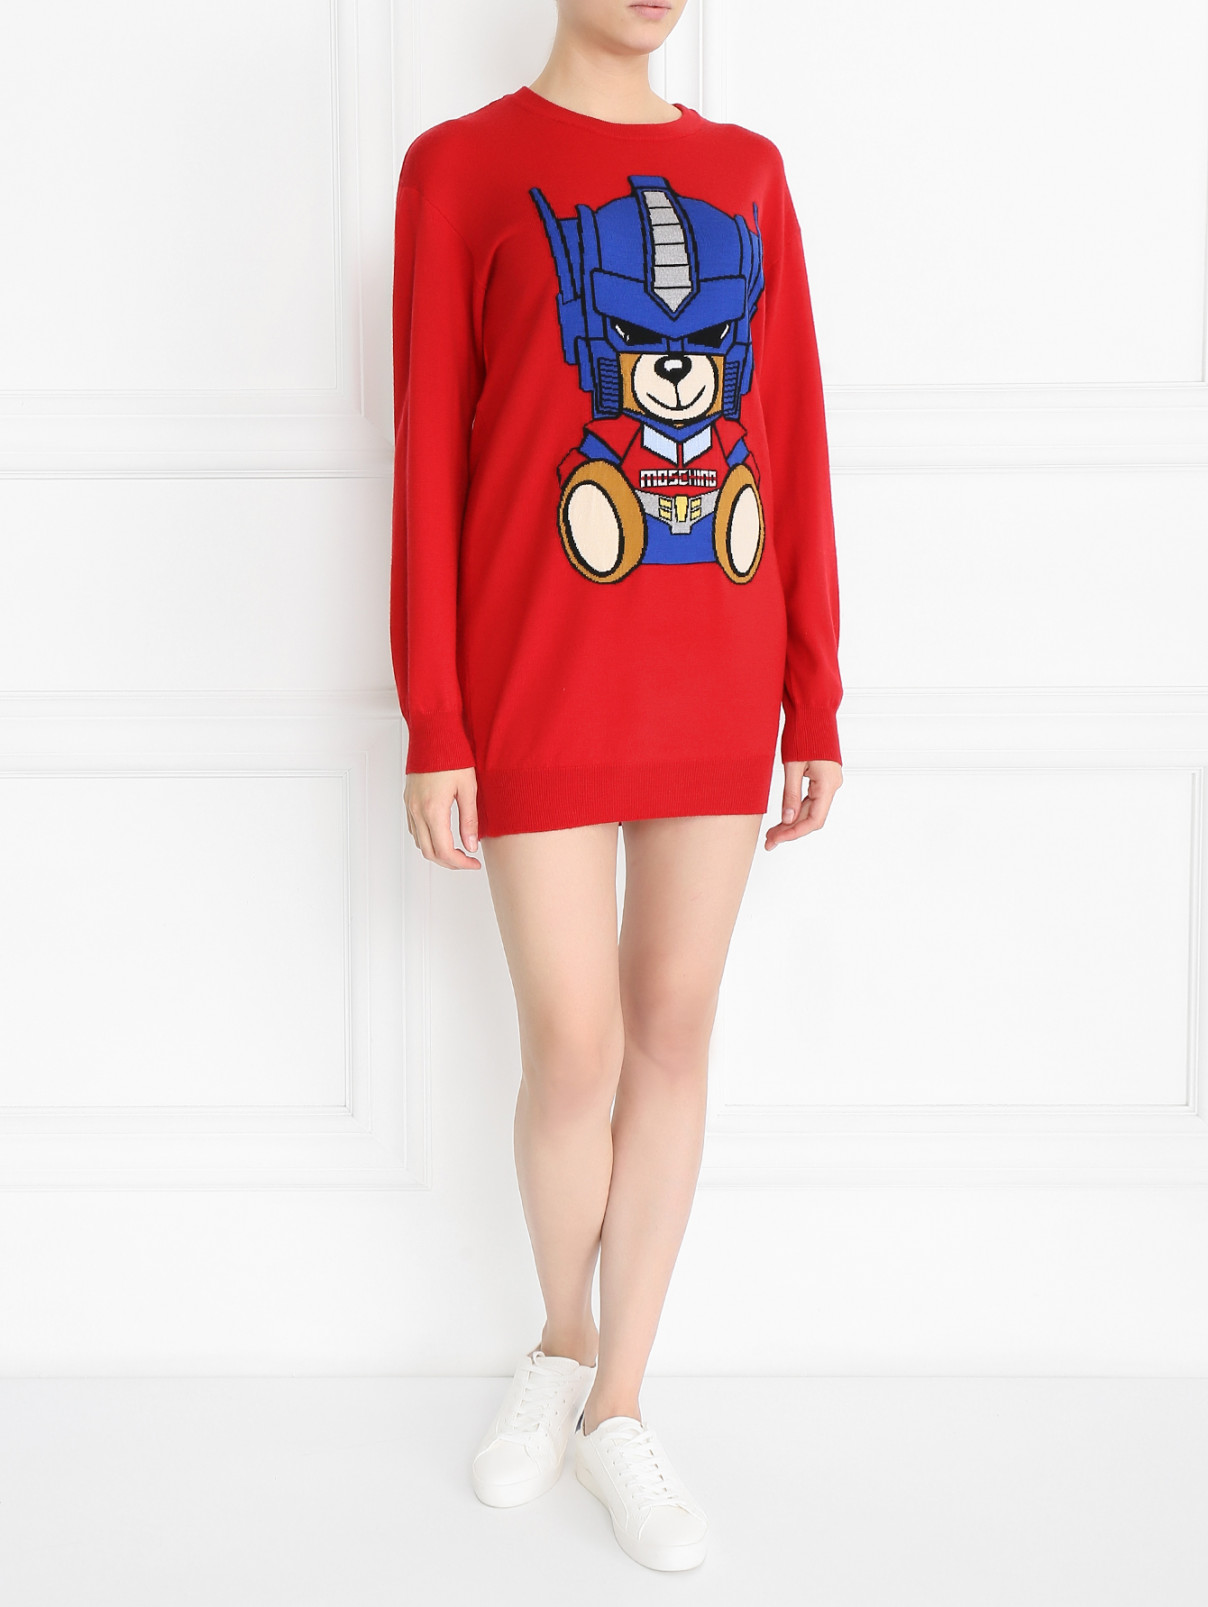 Платье из шерсти с узором Moschino Couture  –  Модель Общий вид  – Цвет:  Красный